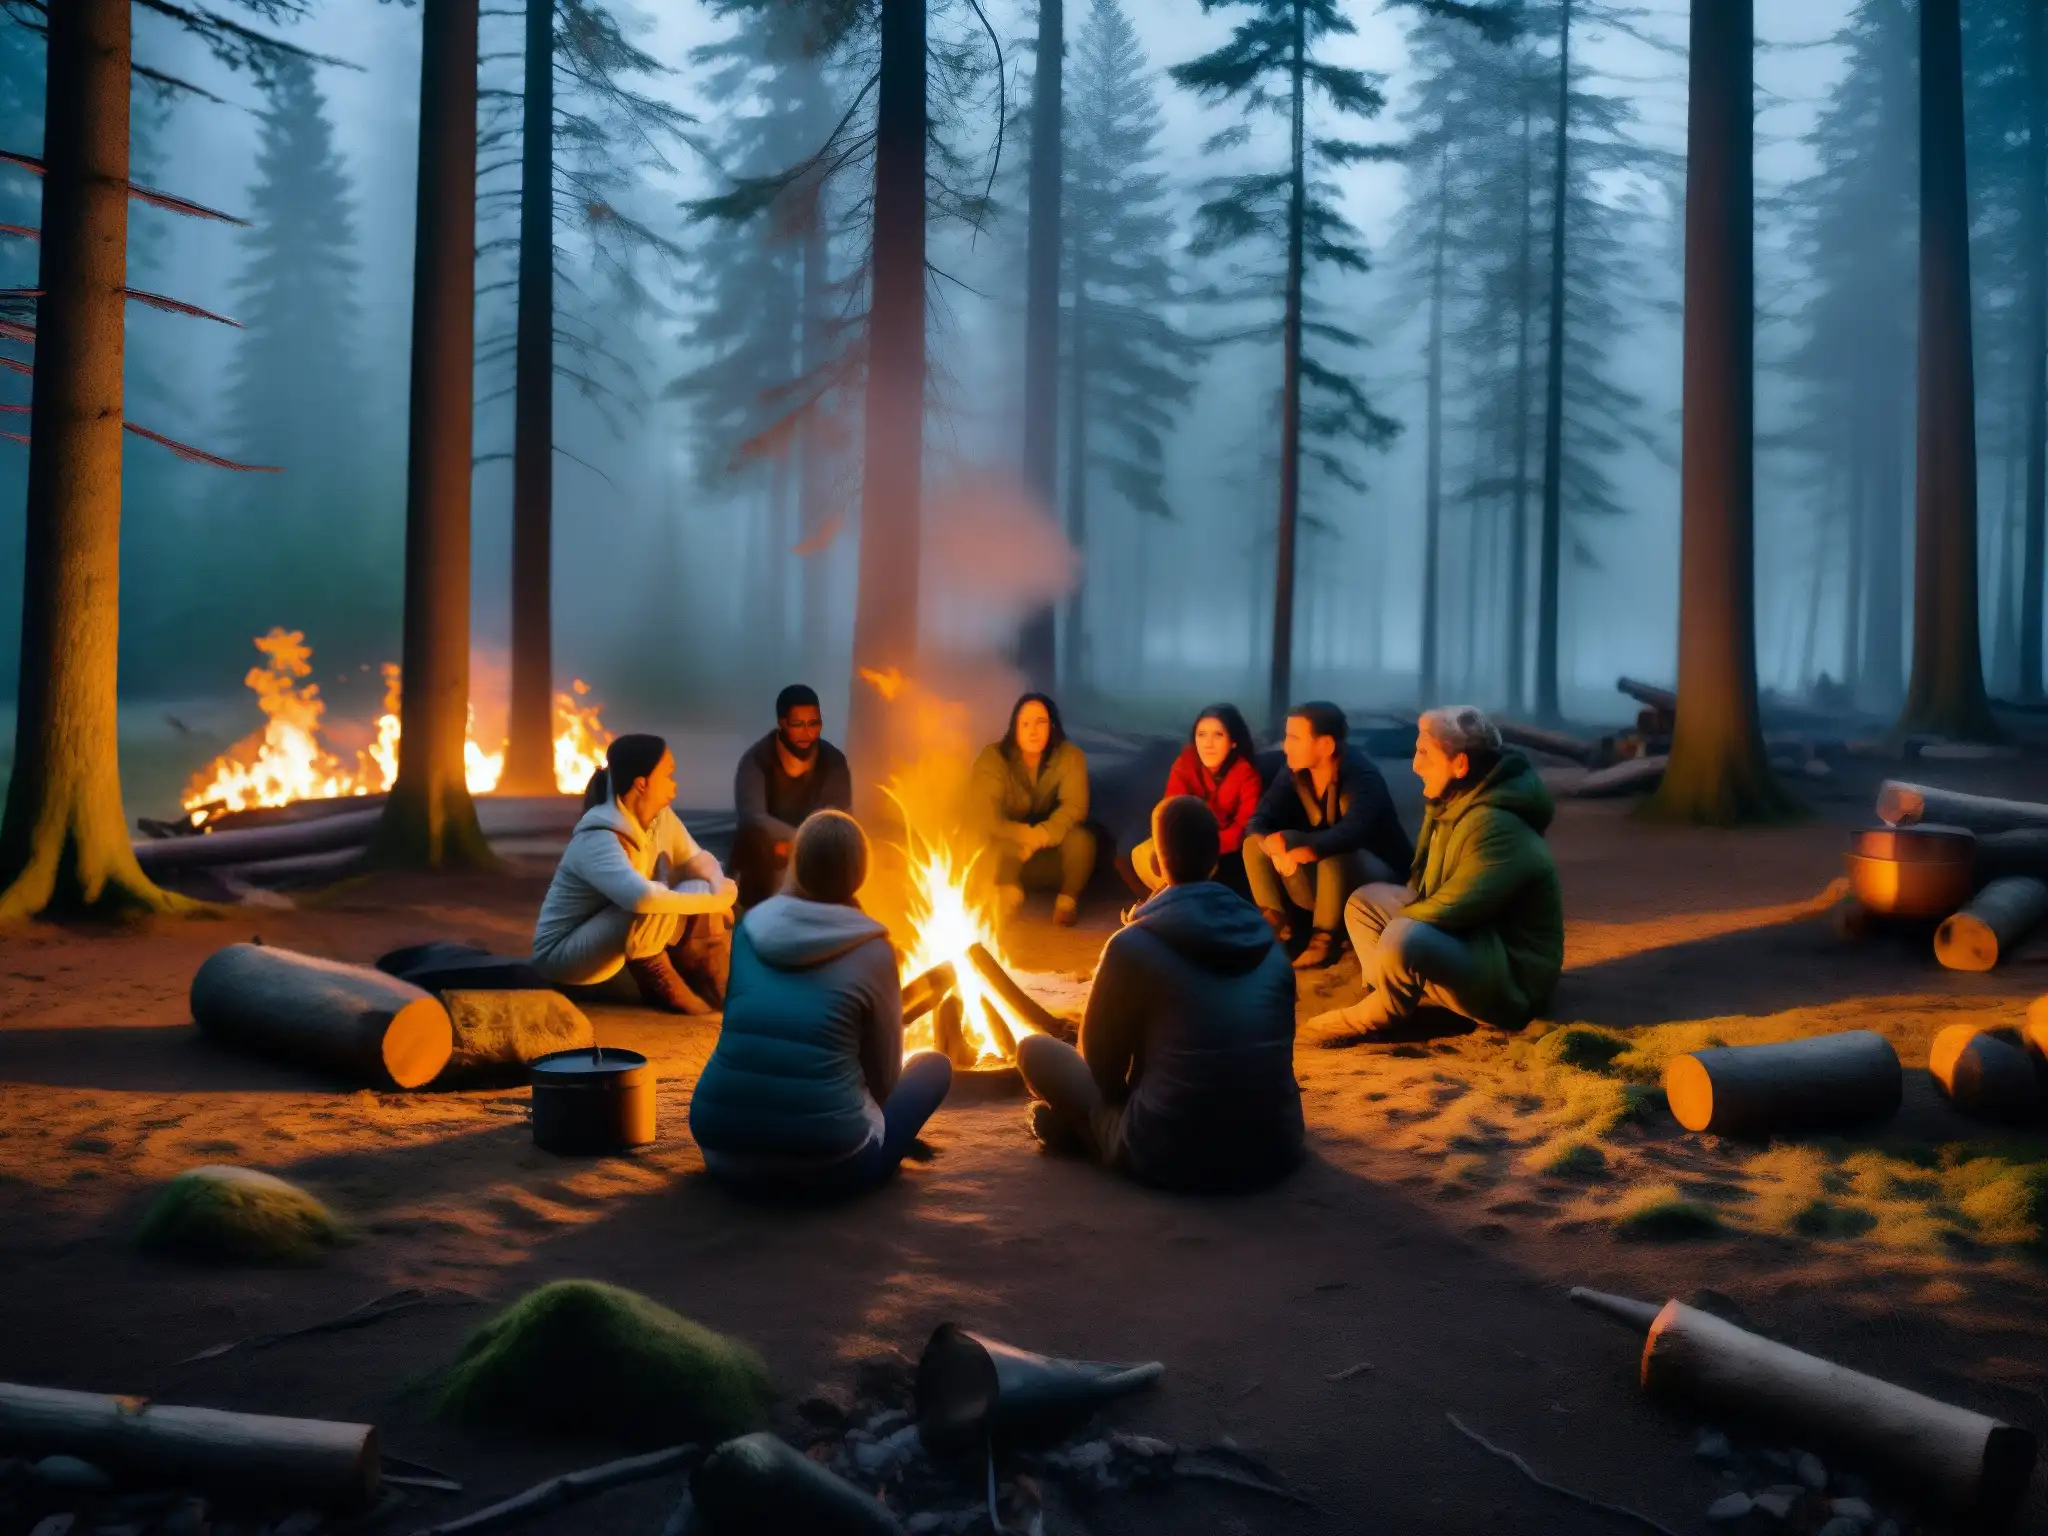 Un grupo escucha leyendas urbanas alrededor de la fogata en un bosque misterioso, capturando el impacto de la imaginación colectiva